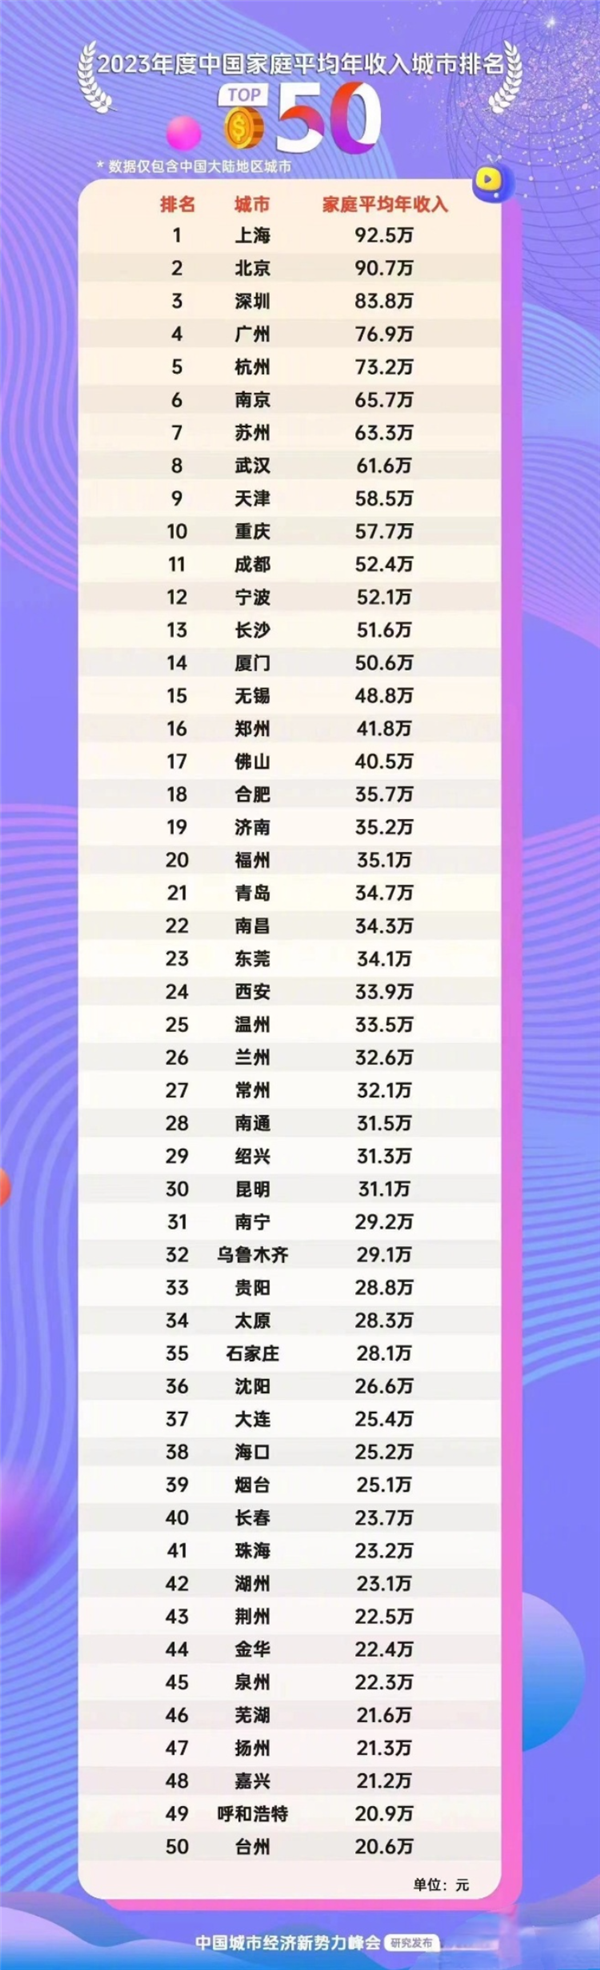 中国家庭平均年收入榜 上海北京深圳逼近百万：官方回应 假消息